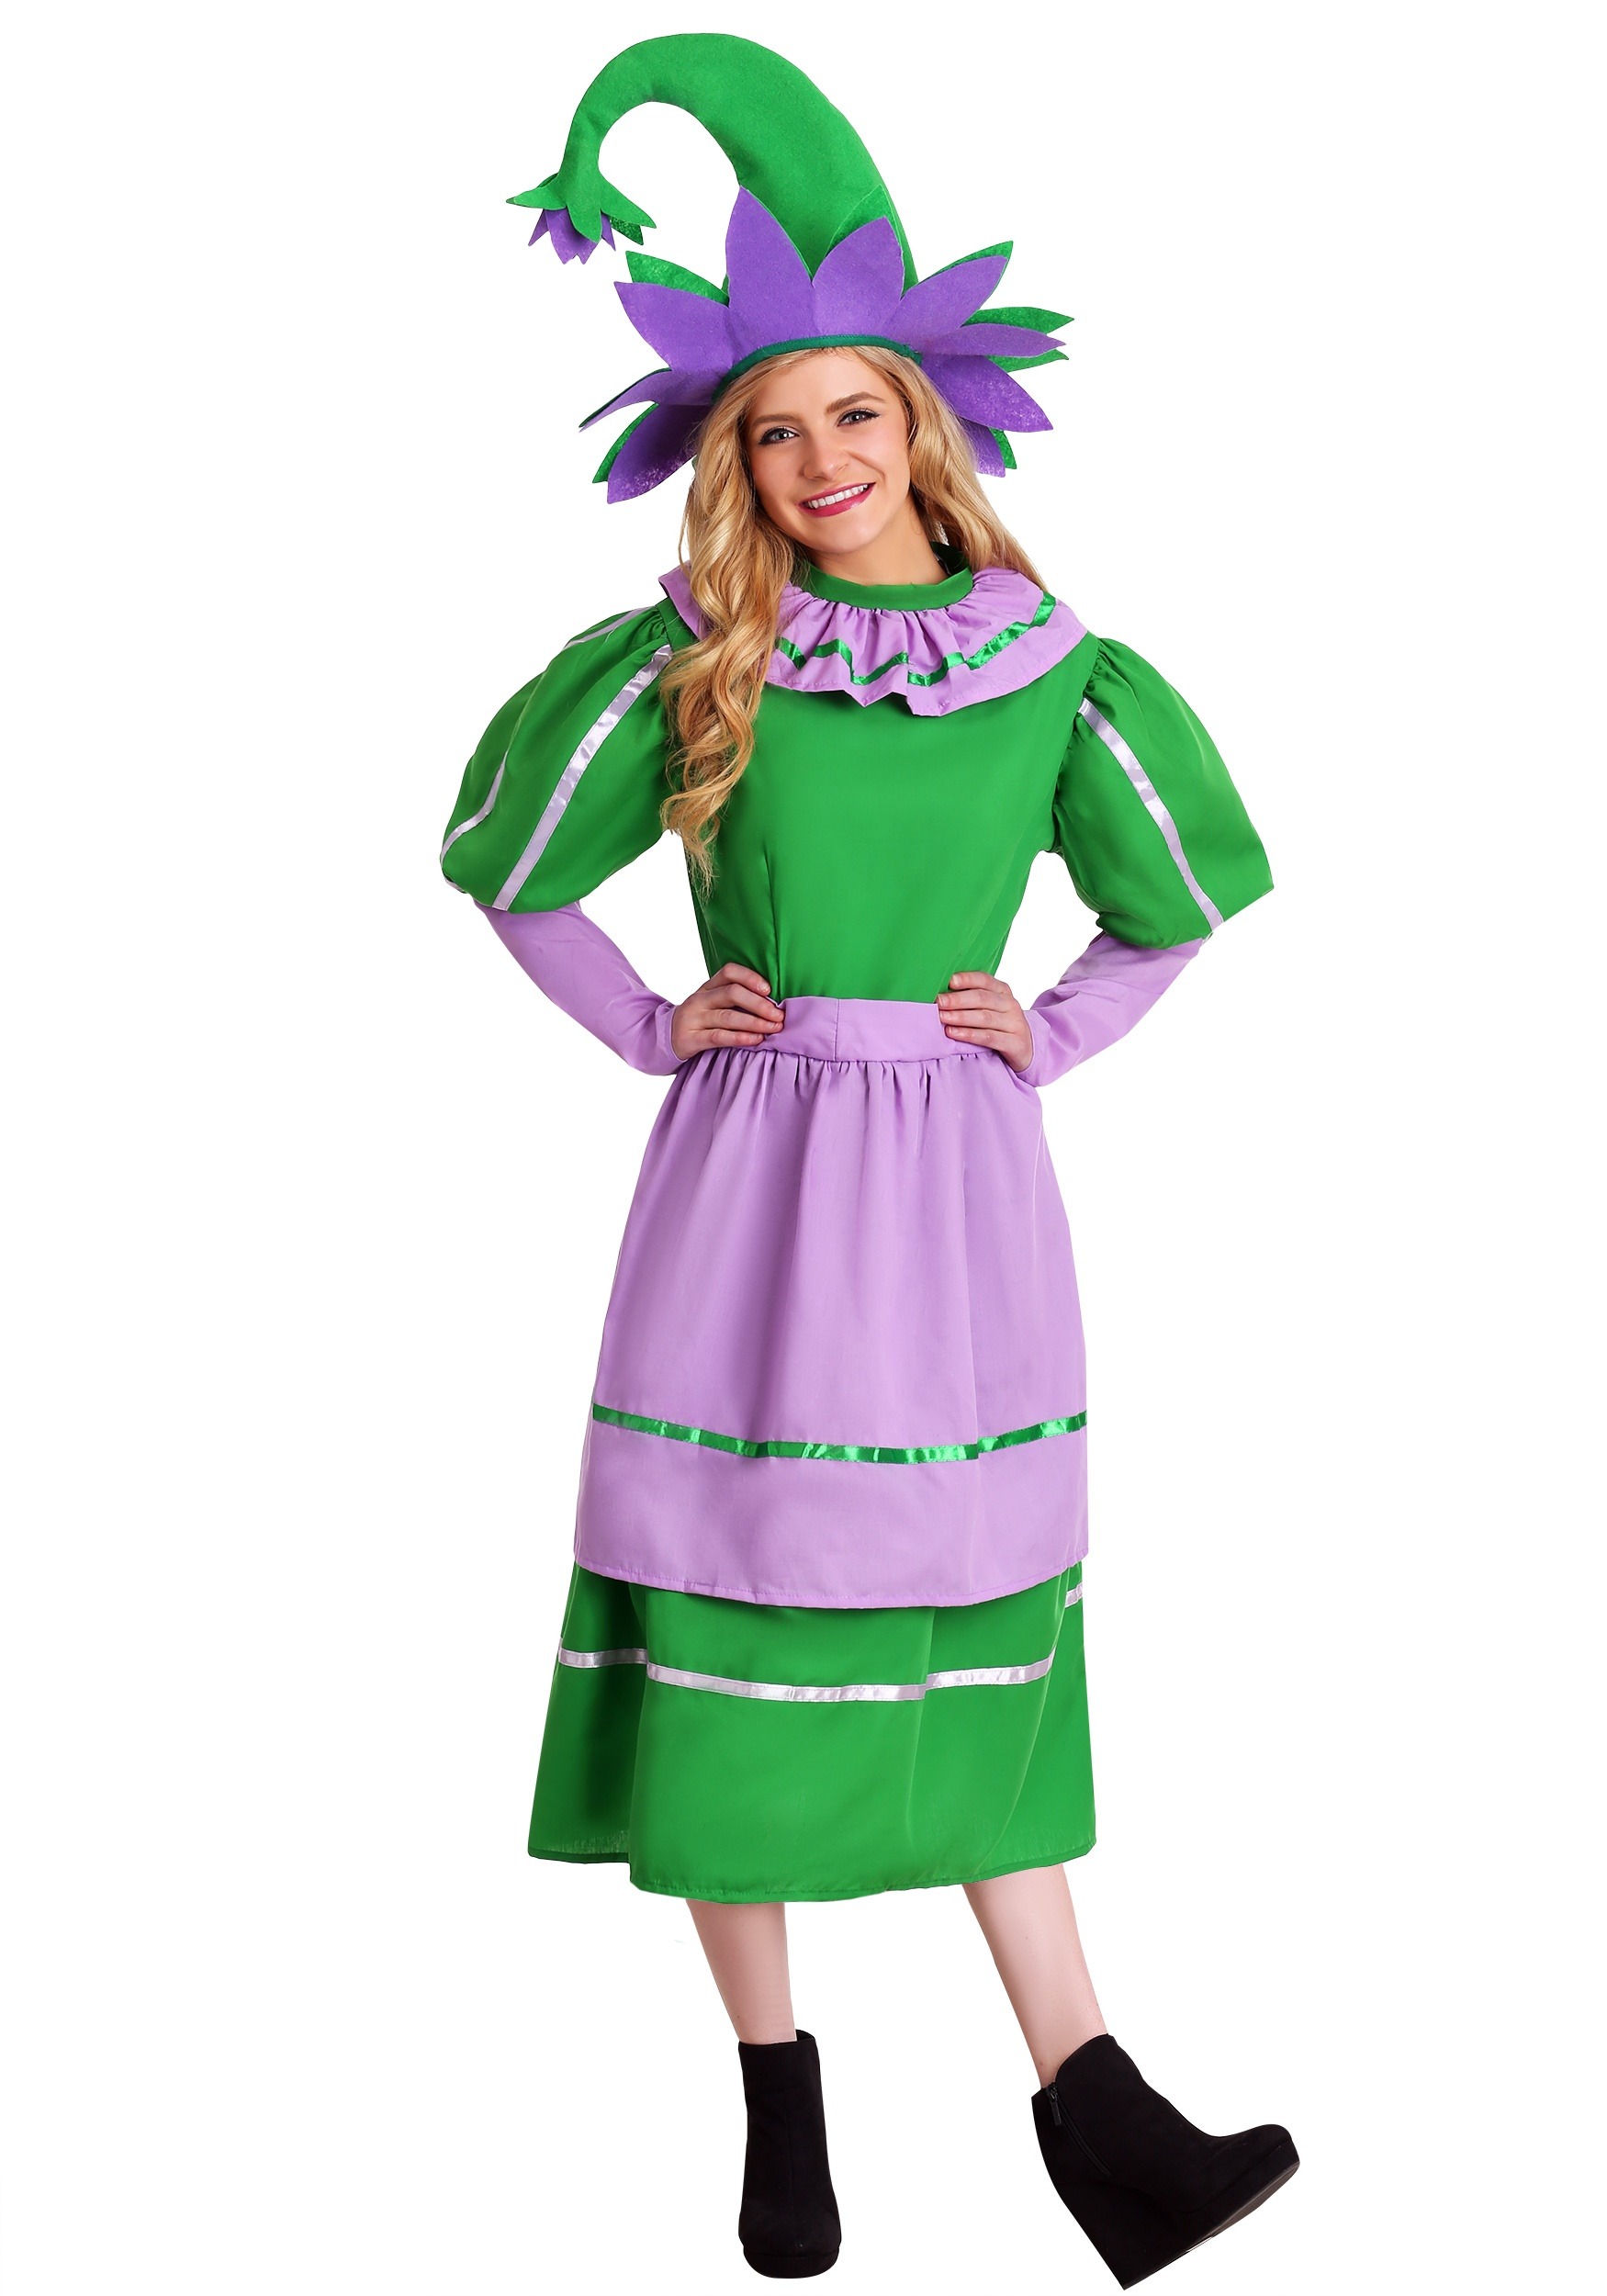 Photos - Fancy Dress Munchkin FUN Costumes Women's Plus Size  Girl  Costume Green 